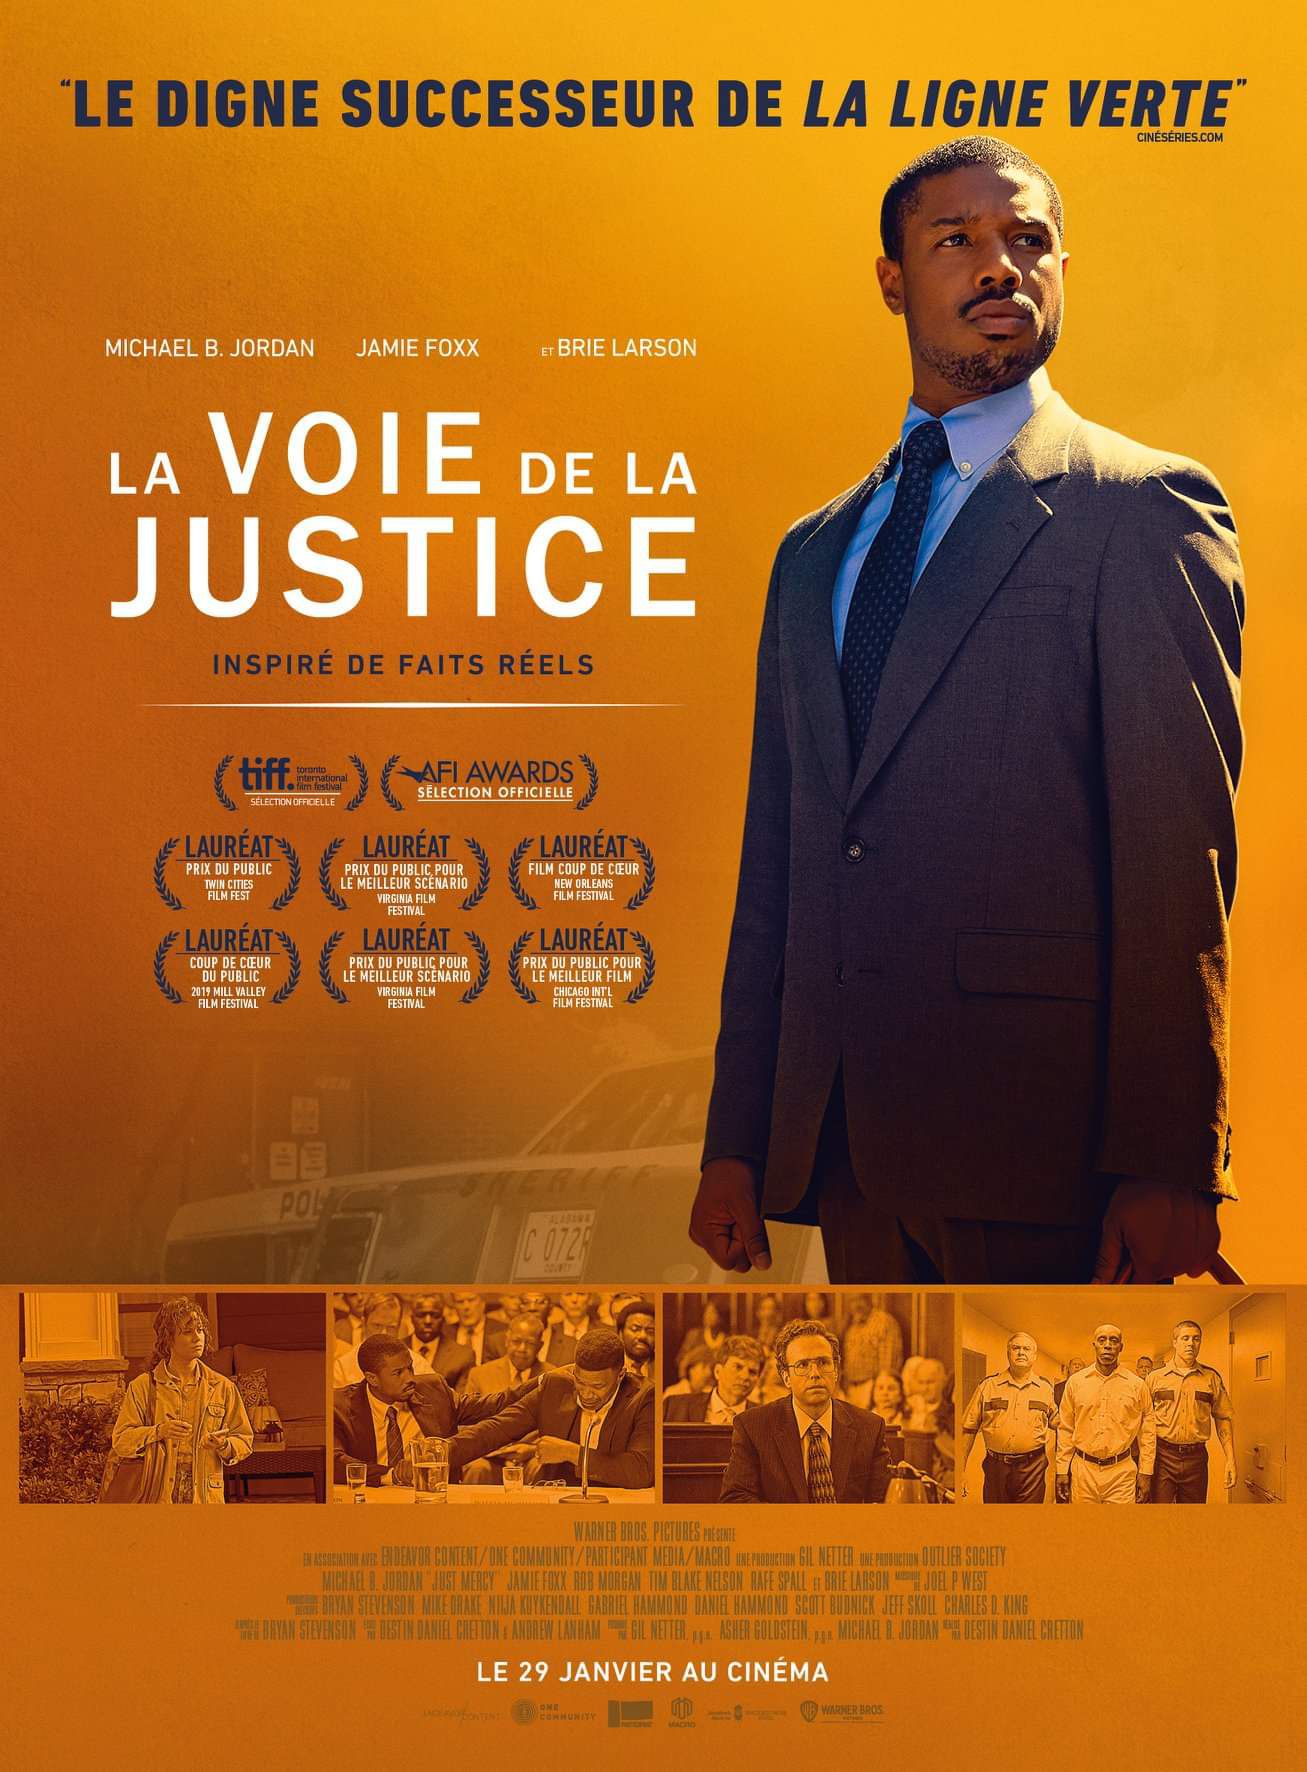 La Voie de la justice - Film (2020) streaming VF gratuit complet